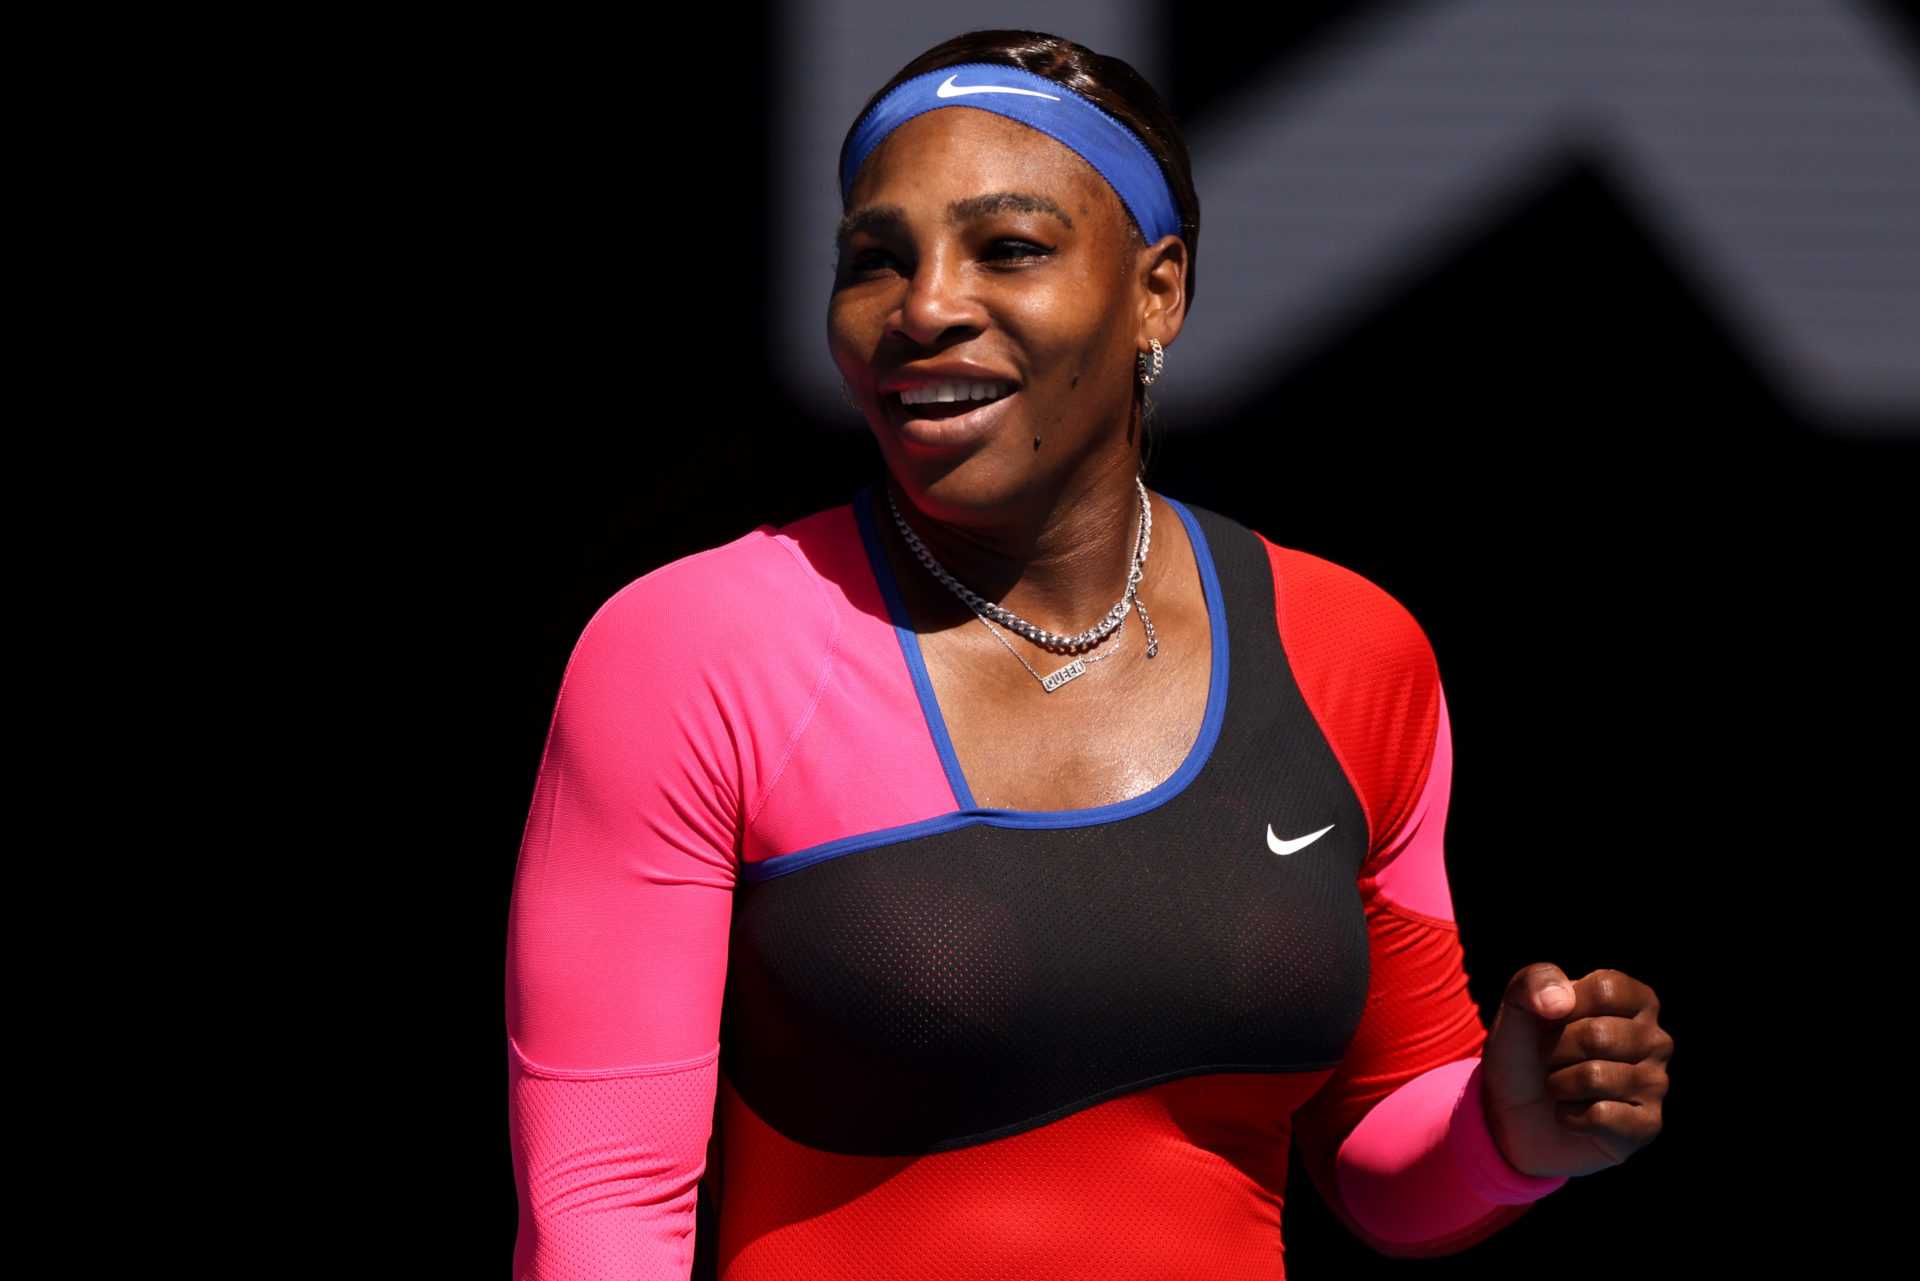 La double championne du monde de patinage artistique souhaite échanger des corps avec Serena Williams